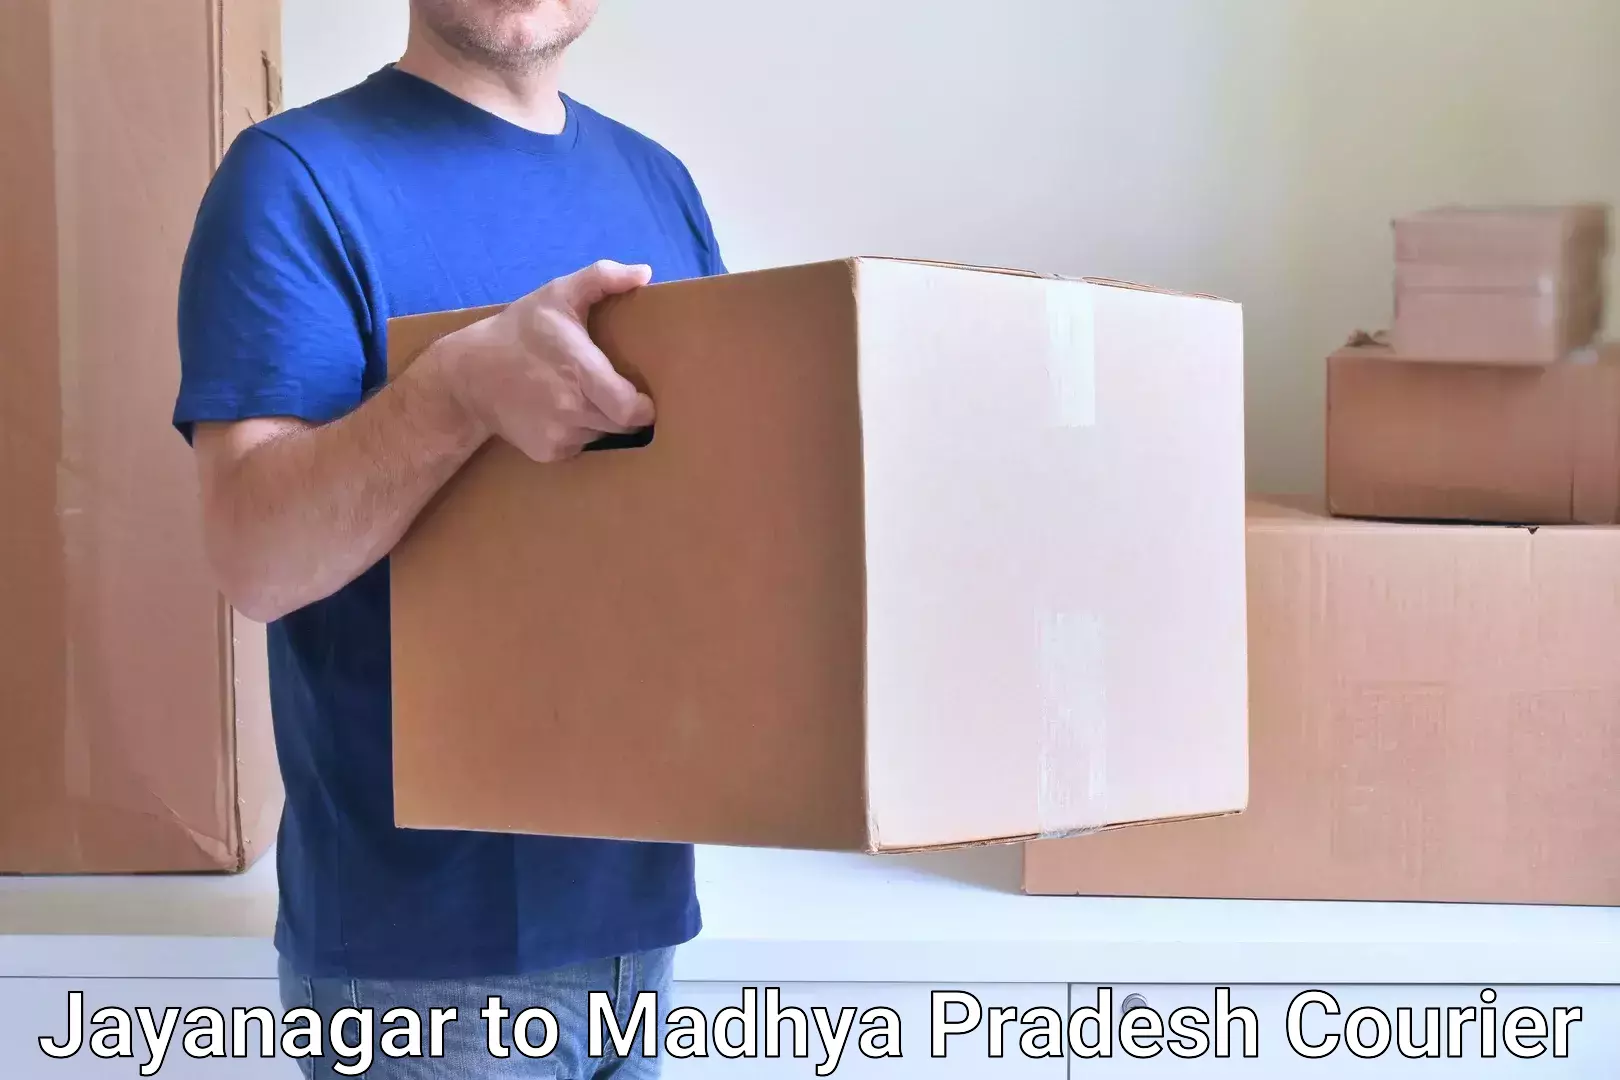 Fragile item shipping Jayanagar to Tikamgarh